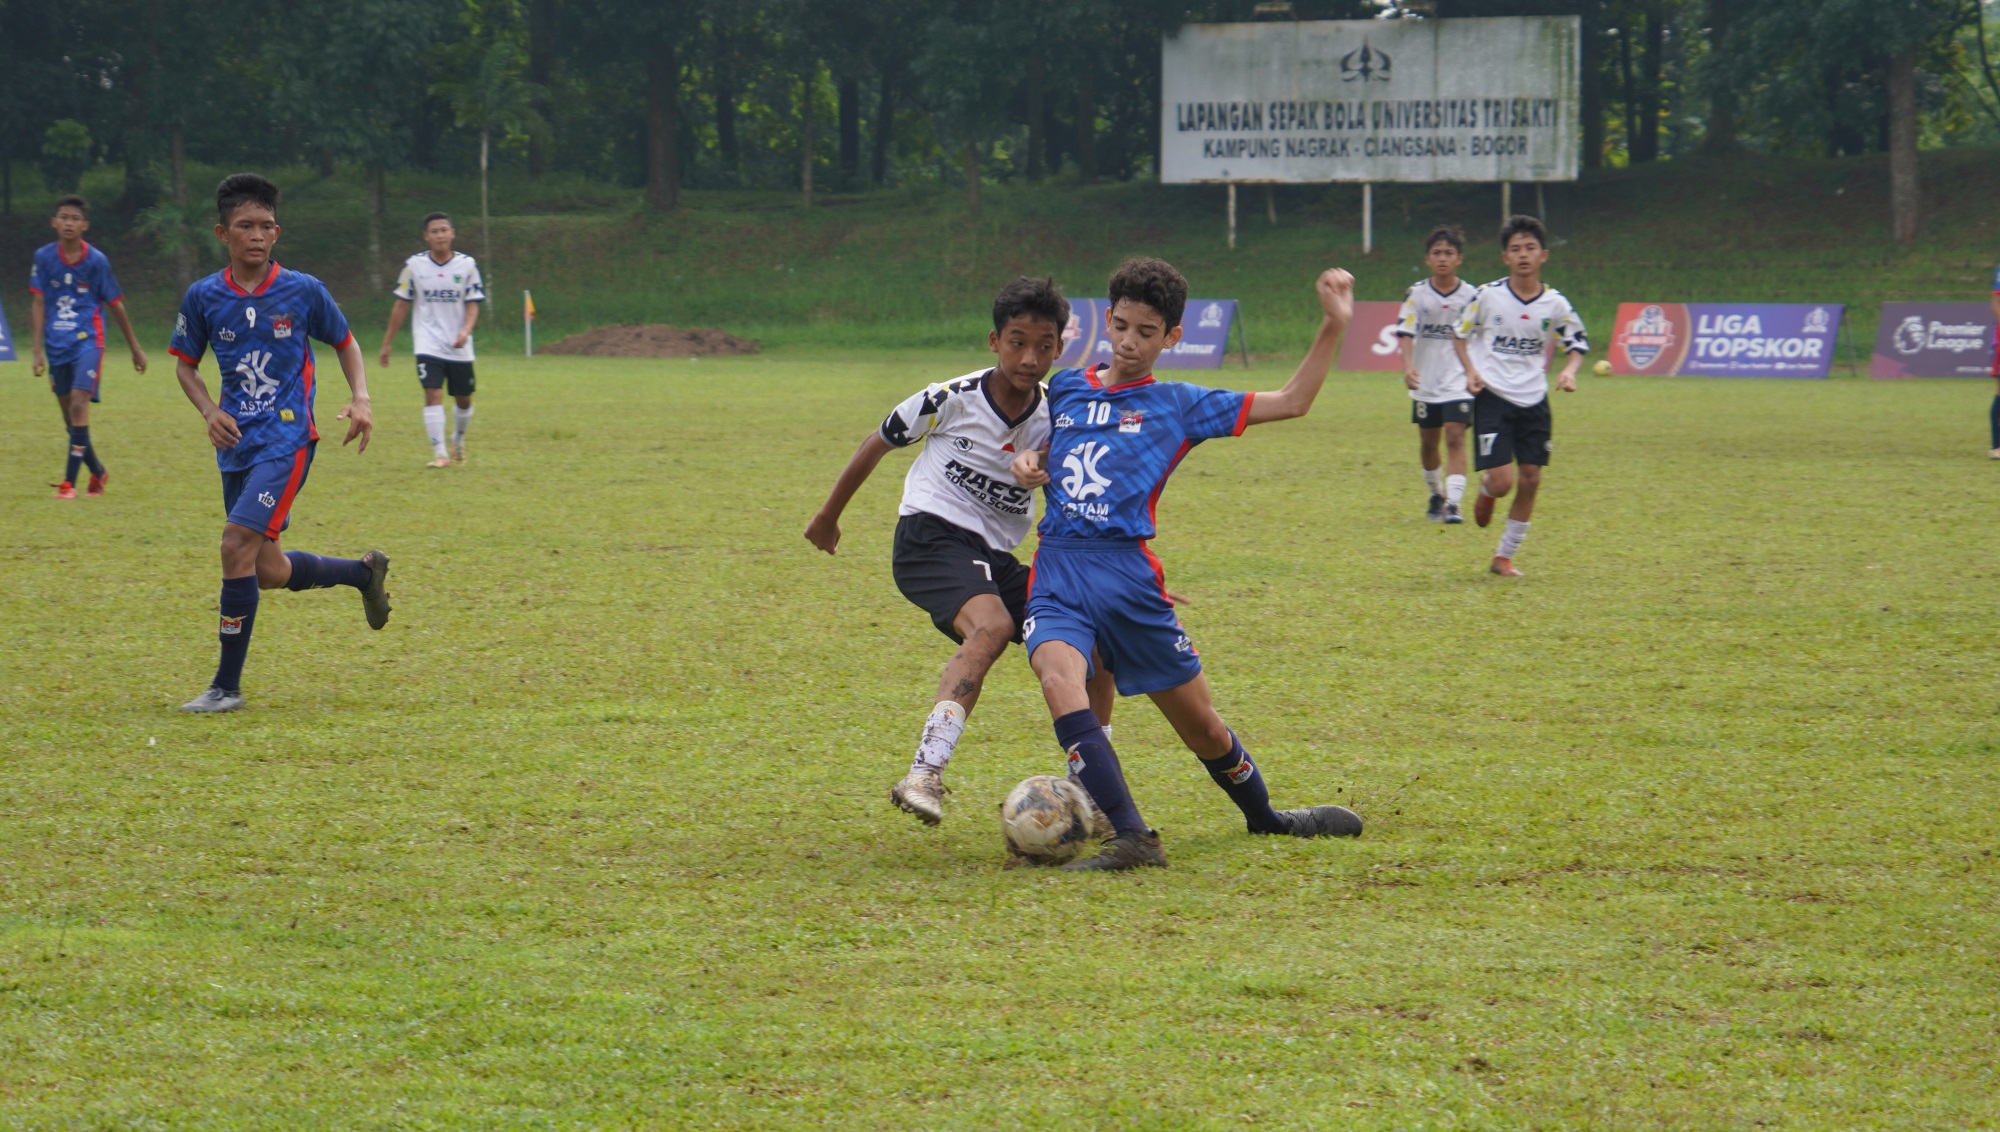 Hasil Liga TopSkor U-14 2022-2023: Pelatih Maesa Kecewa Timnya Bermain Imbang Lawan Astam